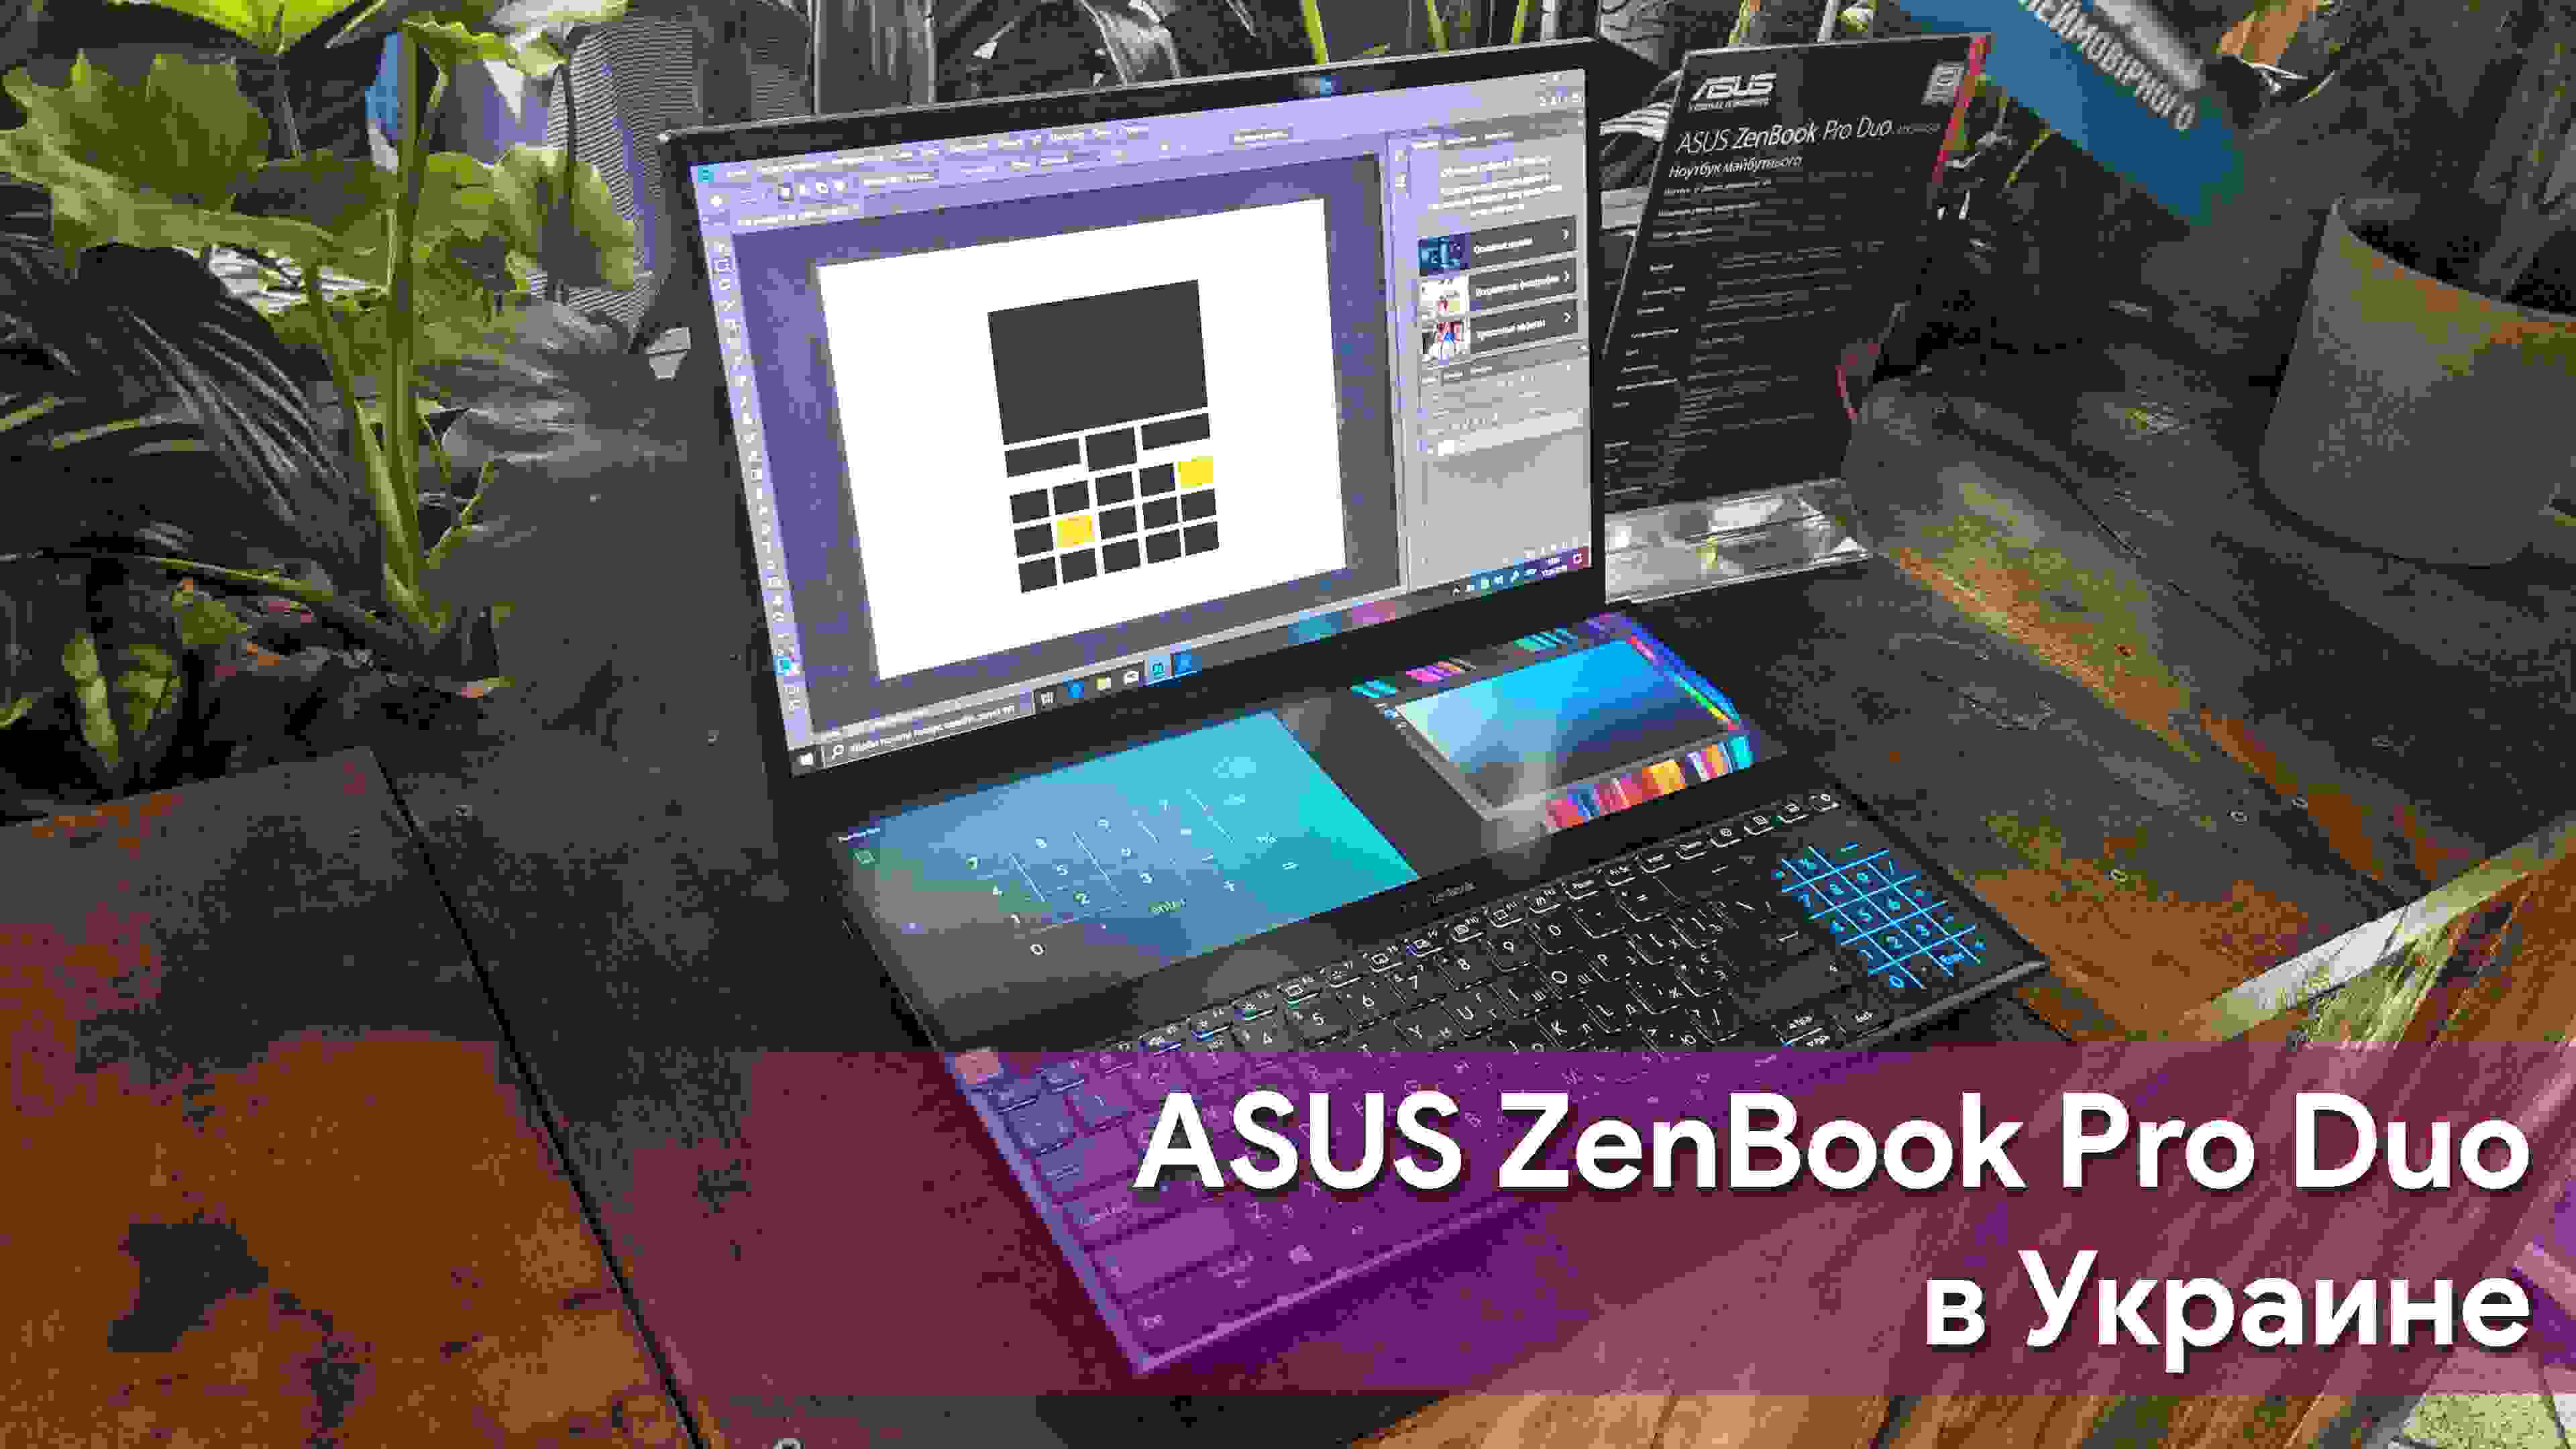 ASUS ZenBook Pro Duo уже можно приобрести в Украине